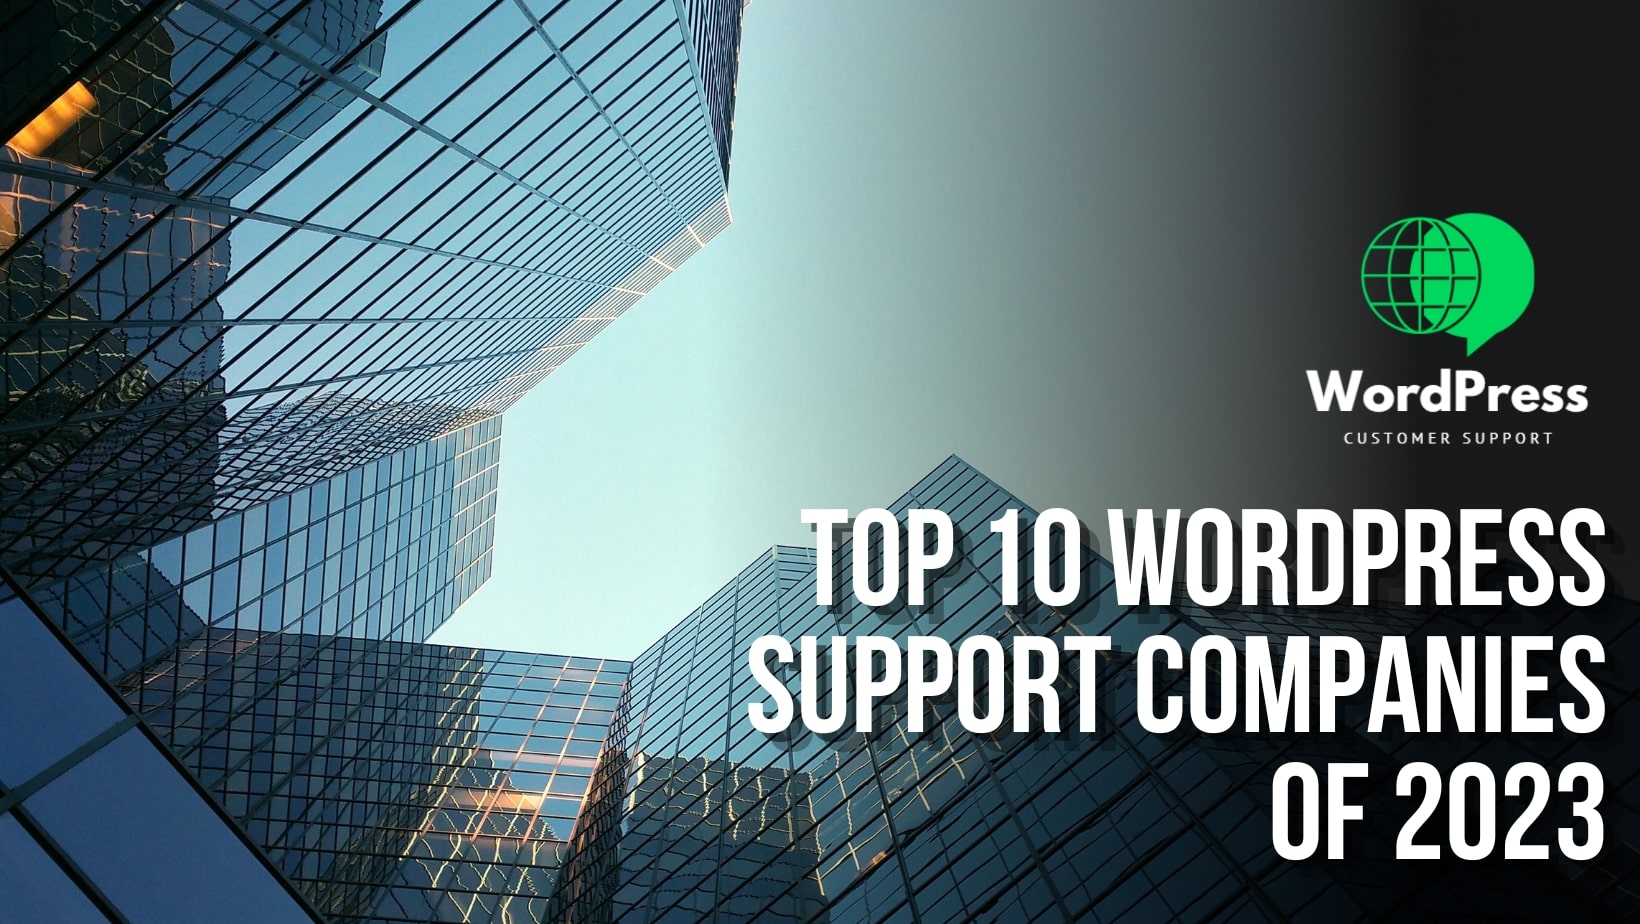 Top 10 WordPress Support Companies of 2023